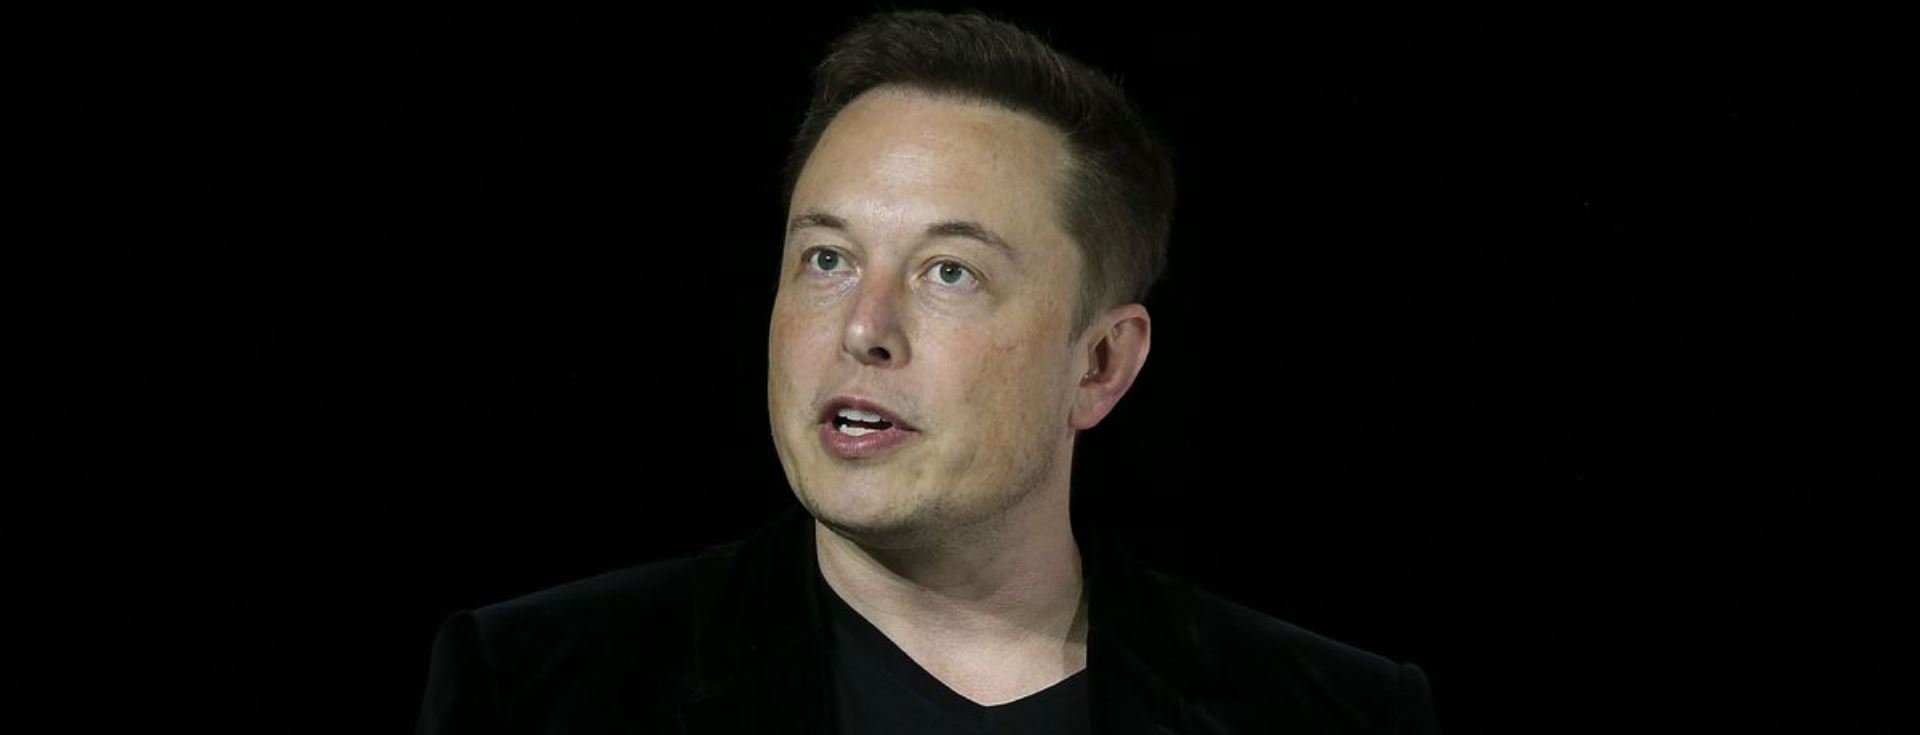 Tüm Detaylarıyla İlham Verici Bir Dahinin Öyküsü: Elon Musk'ın Yükselişi